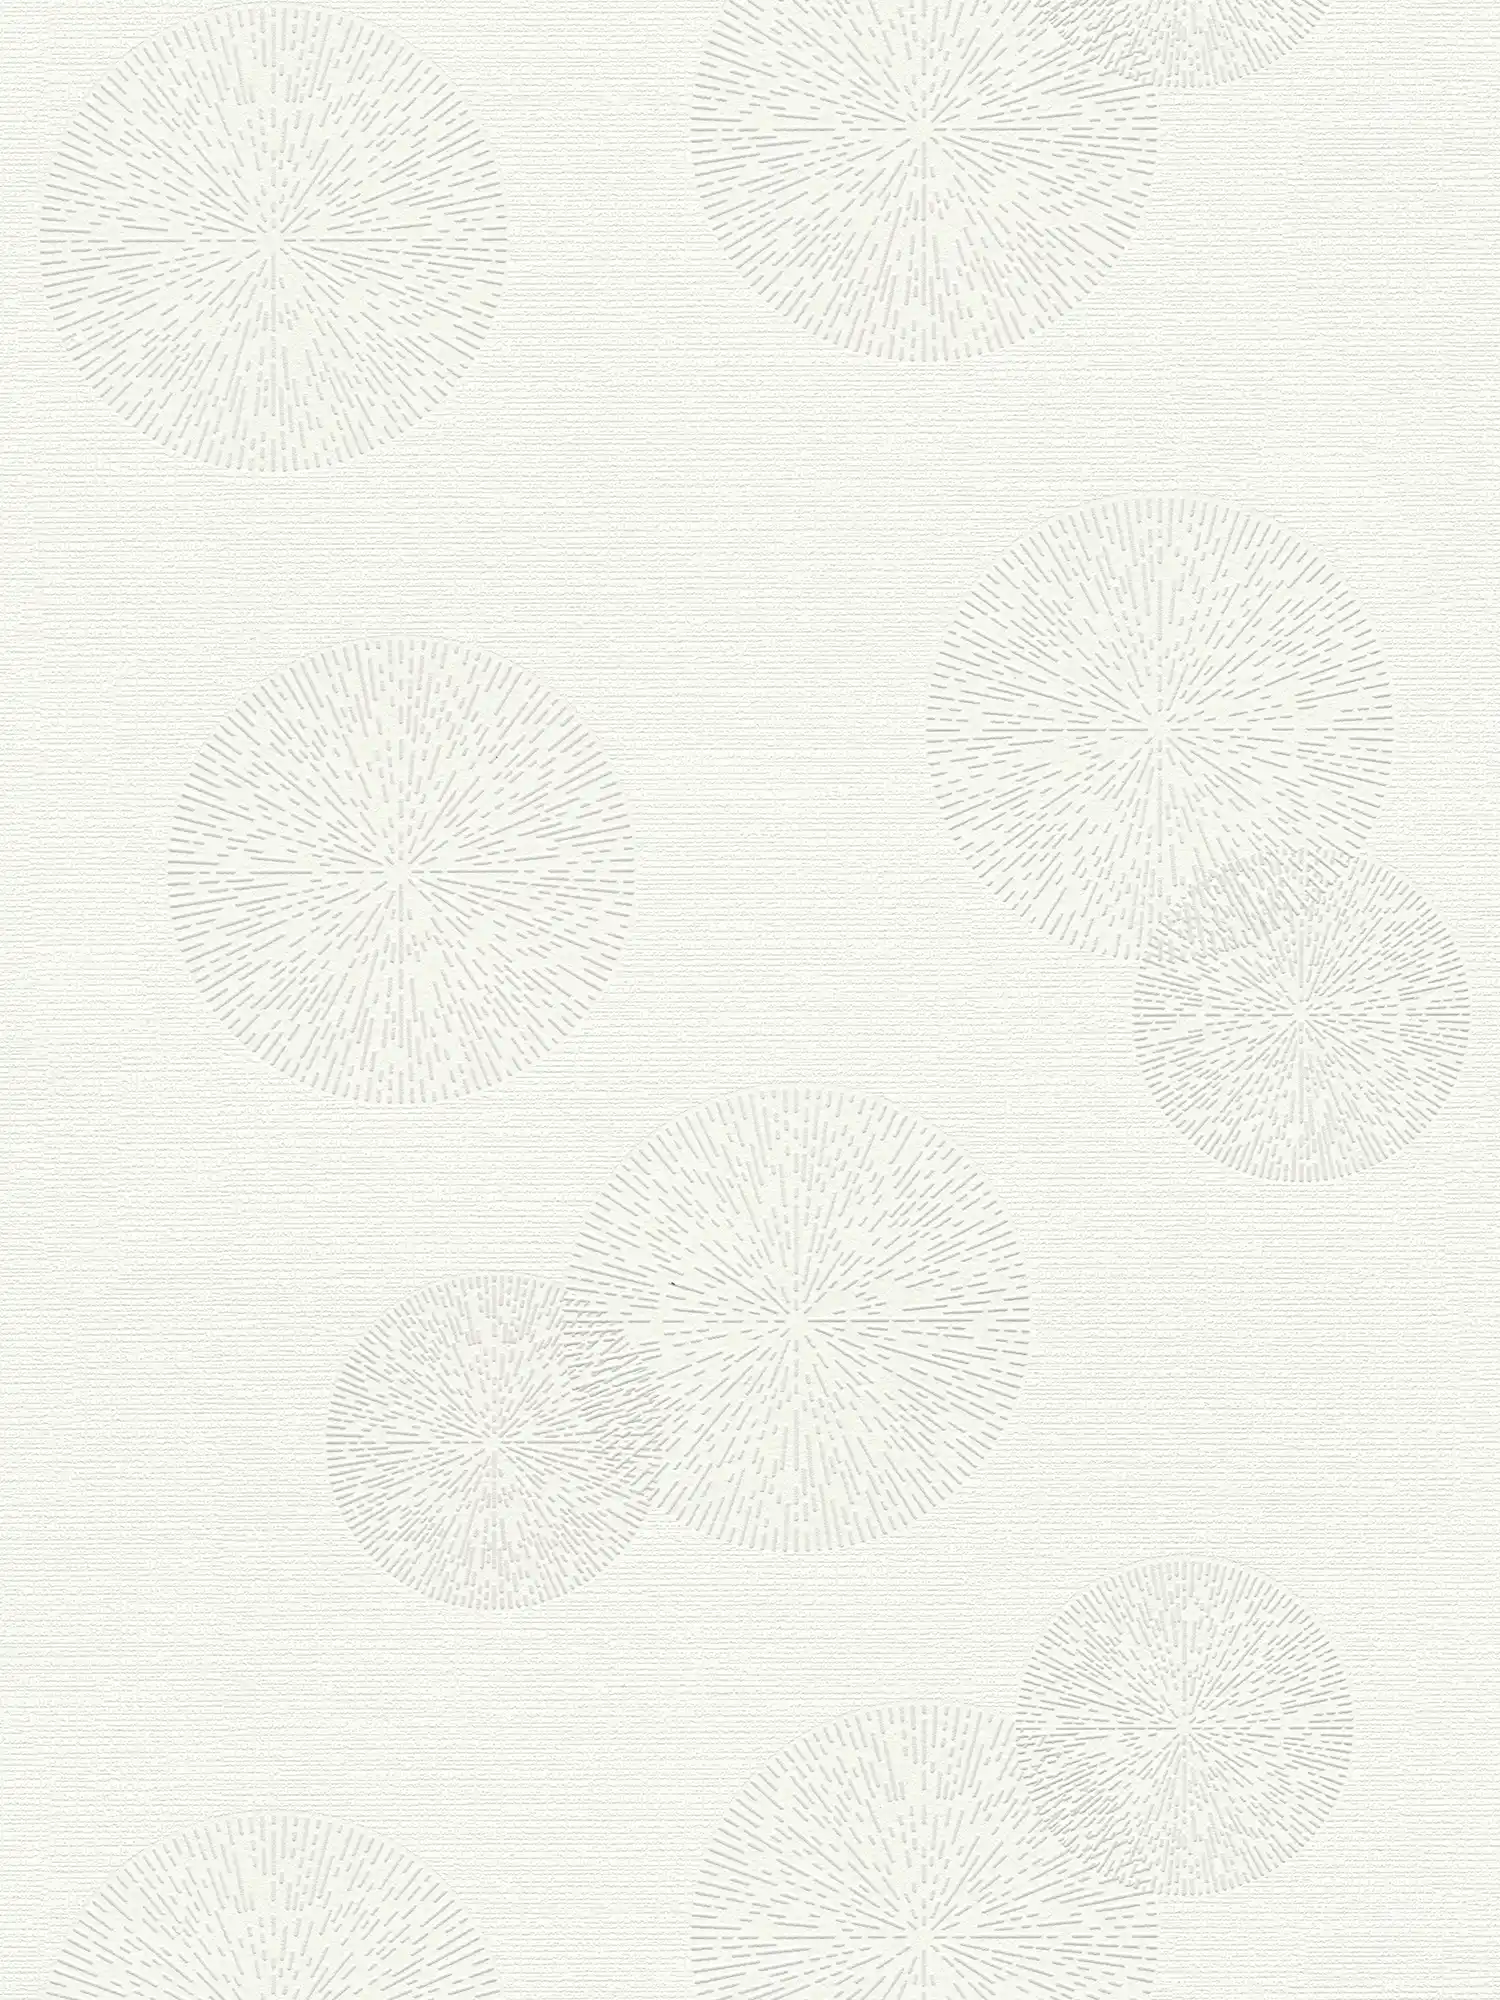 Textuurbehang met modern cirkelpatroon - wit
